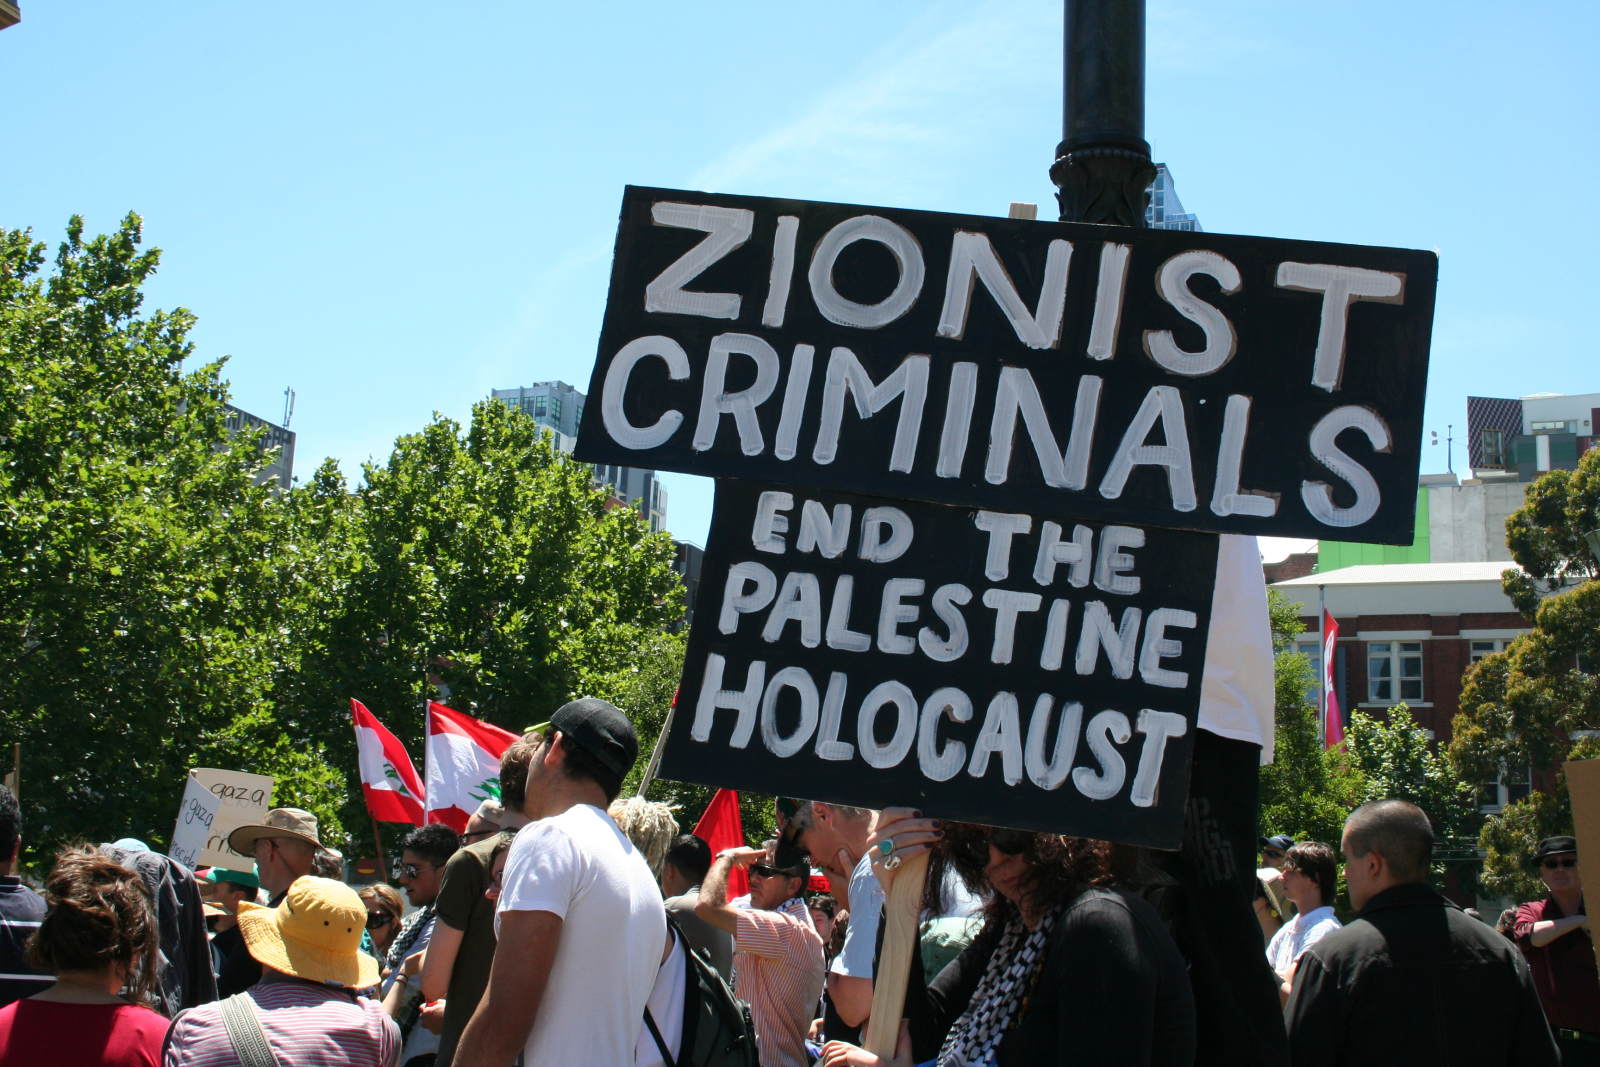 Protesting Zionism in Australia